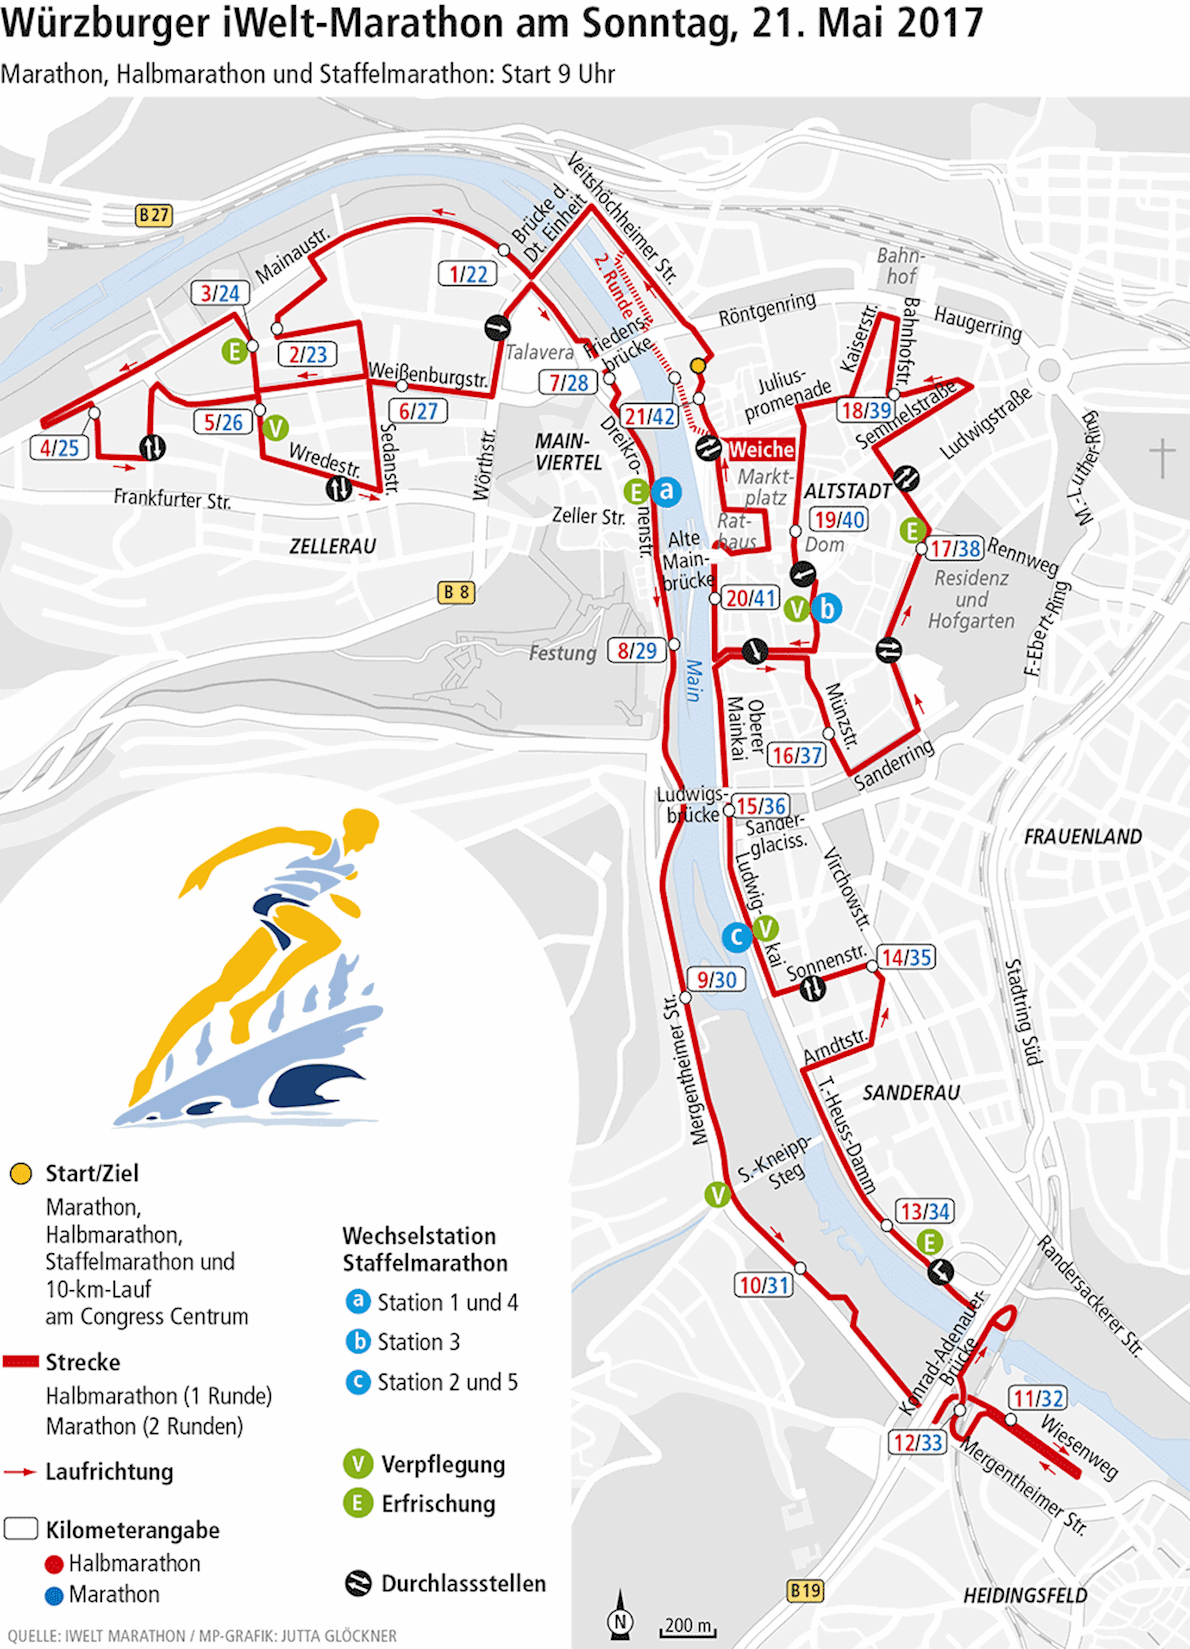 iWelt Marathon Würzburg MAPA DEL RECORRIDO DE